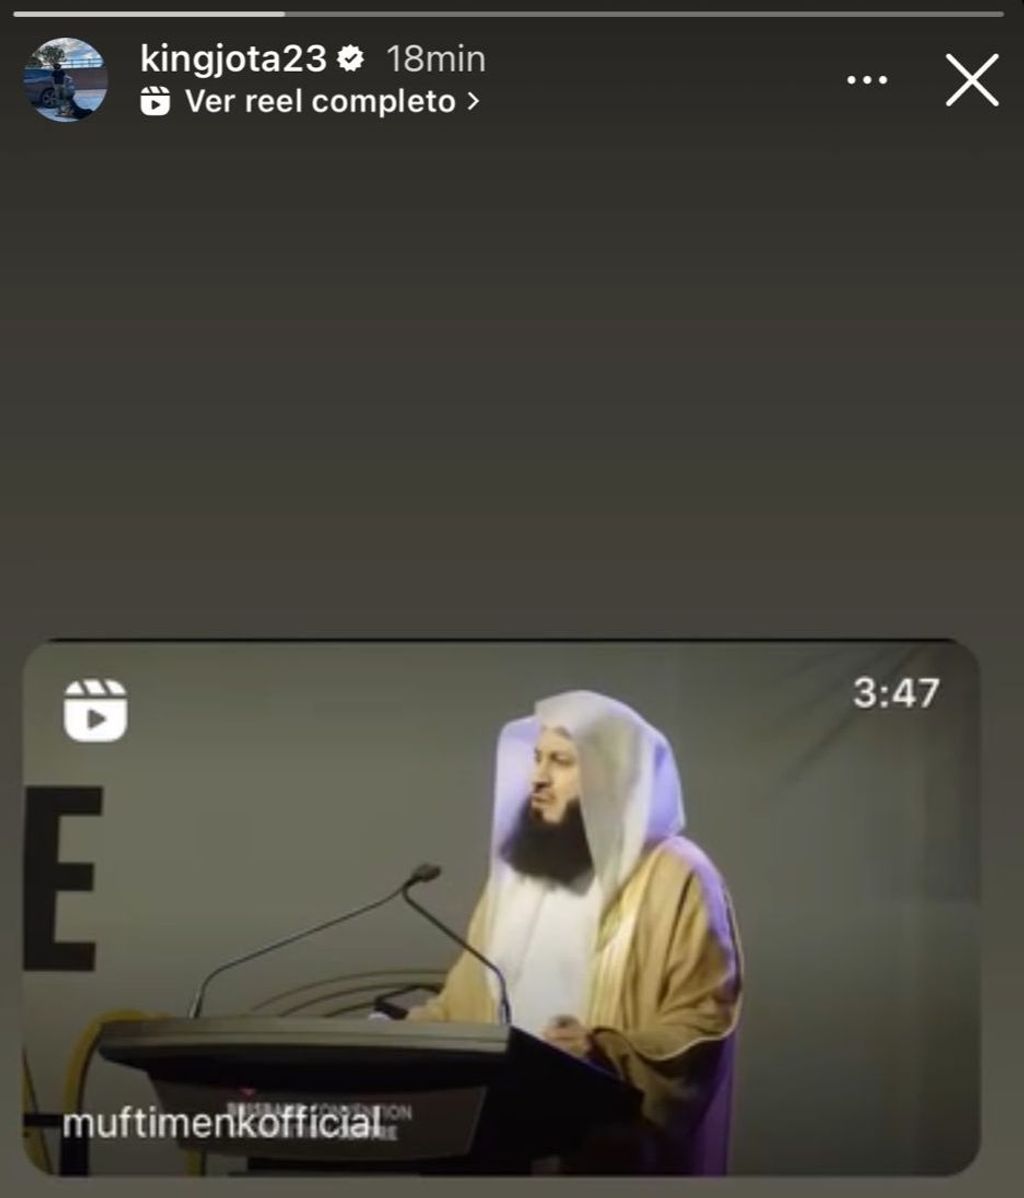 Jota Peleteiro se reafirma en su creencia en el islam con un discurso de Mutfi Menk